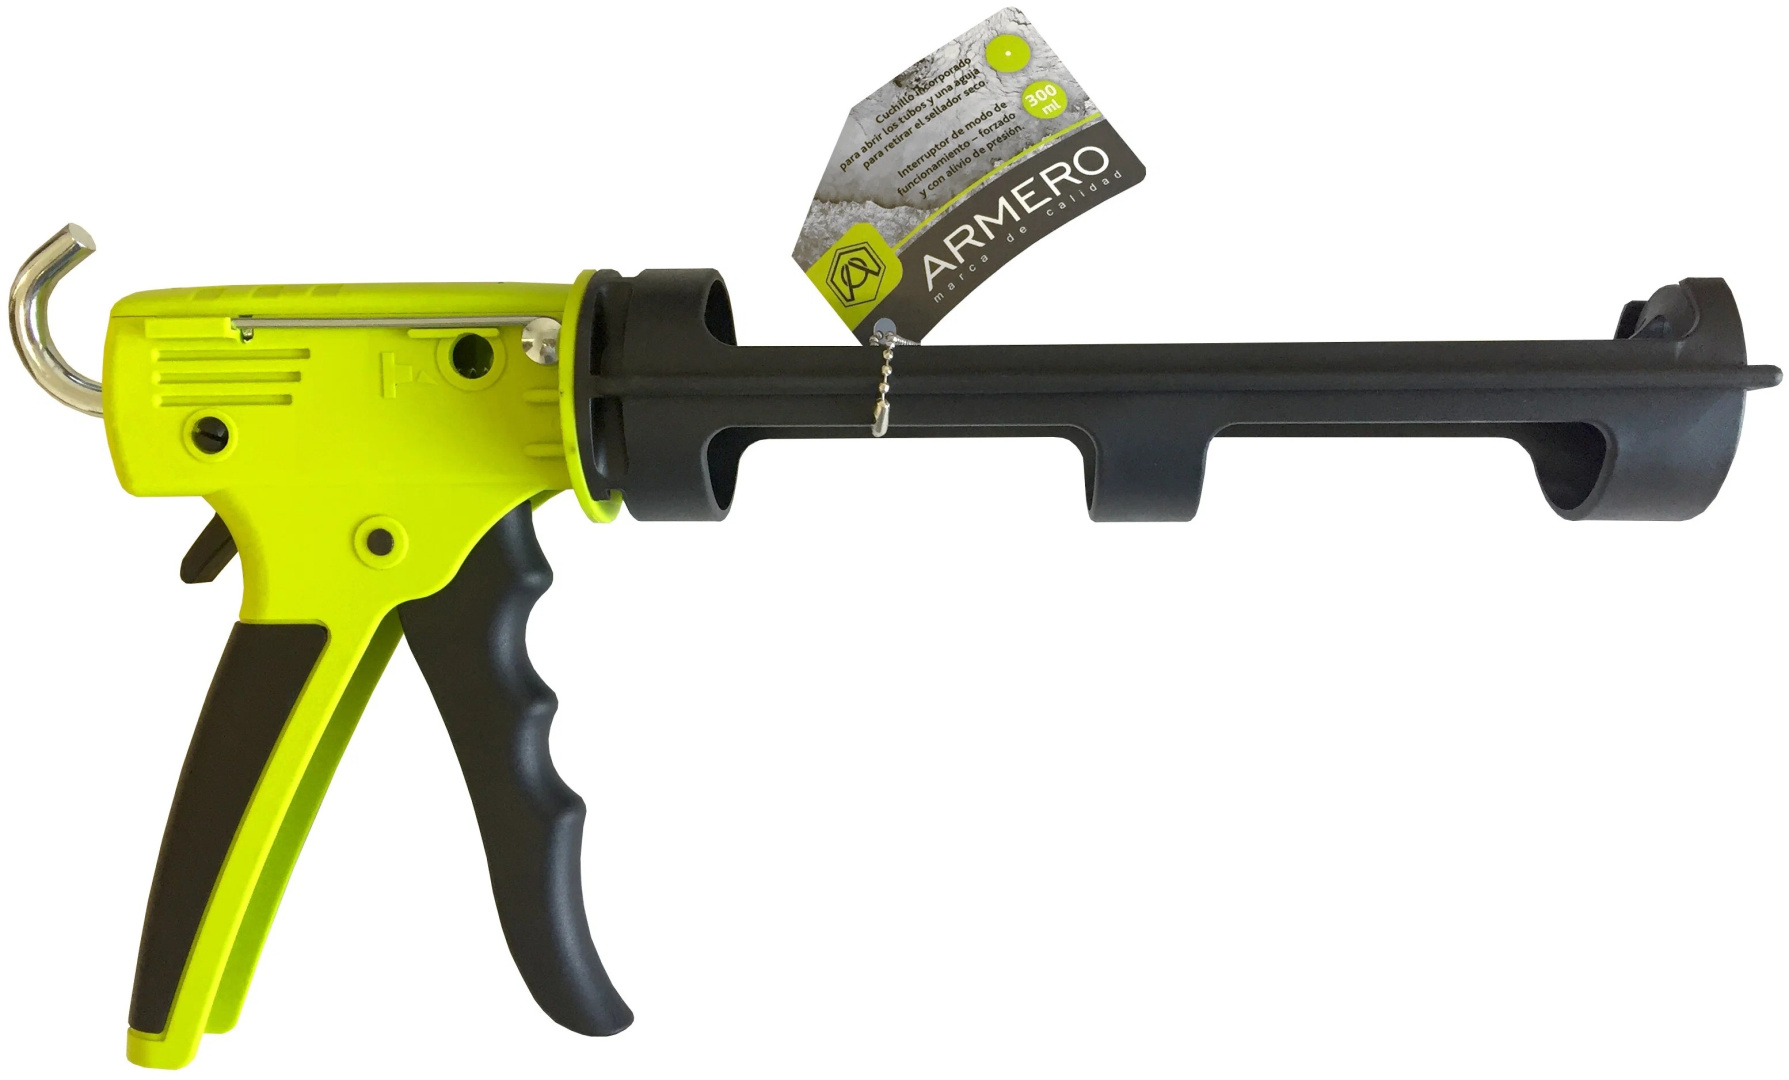 Пистолет для герметиков скелетный пластиковый 310 мл Armero A251/004